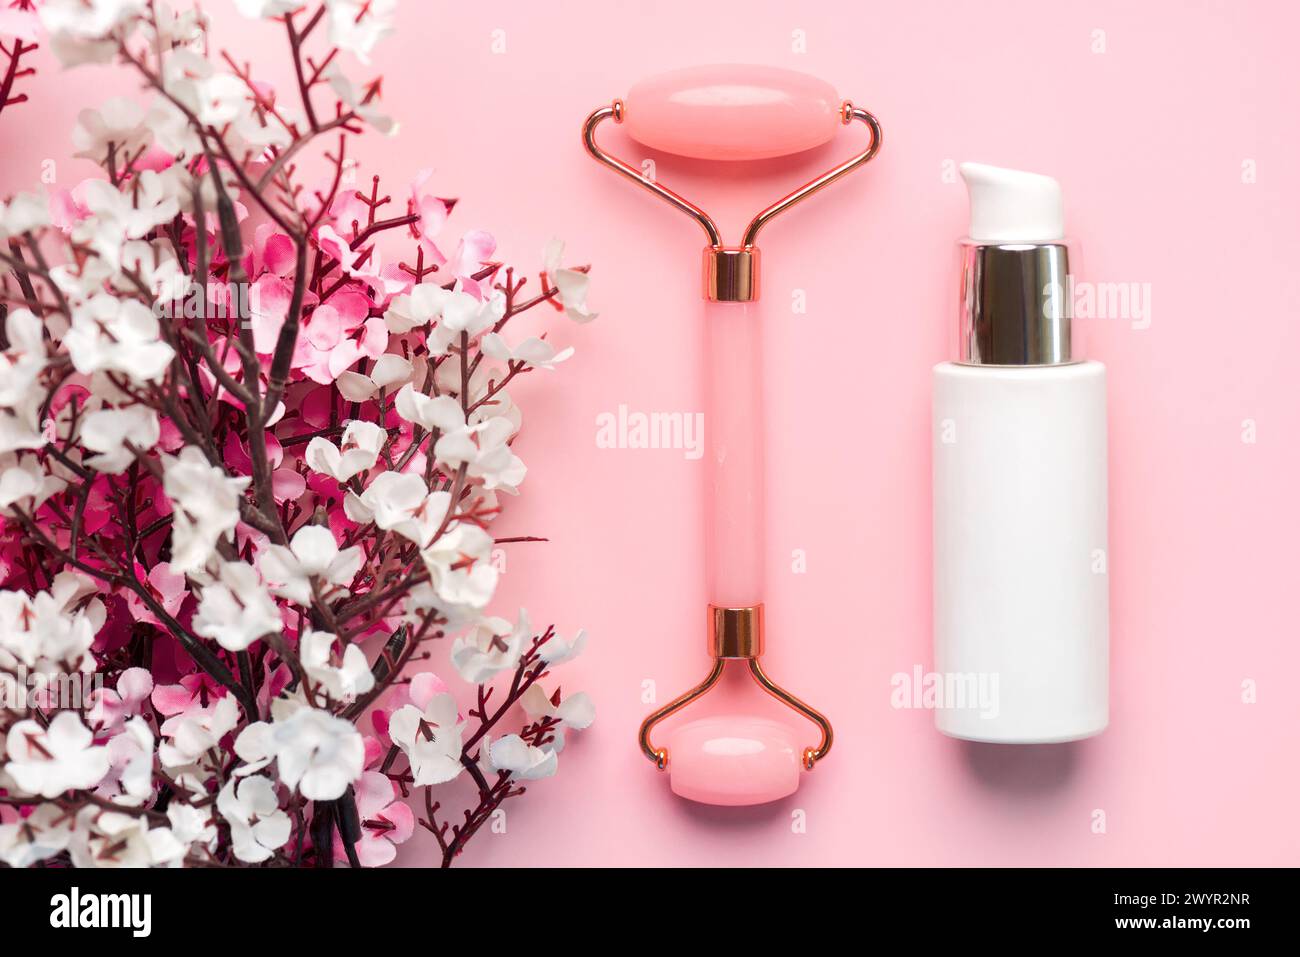 Primo piano del rullo massaggiatore di giada, bottiglia di crema viso per la cura della pelle e fiori di mandorle su sfondo rosa. Concetto di prodotti per la cura della pelle Foto Stock